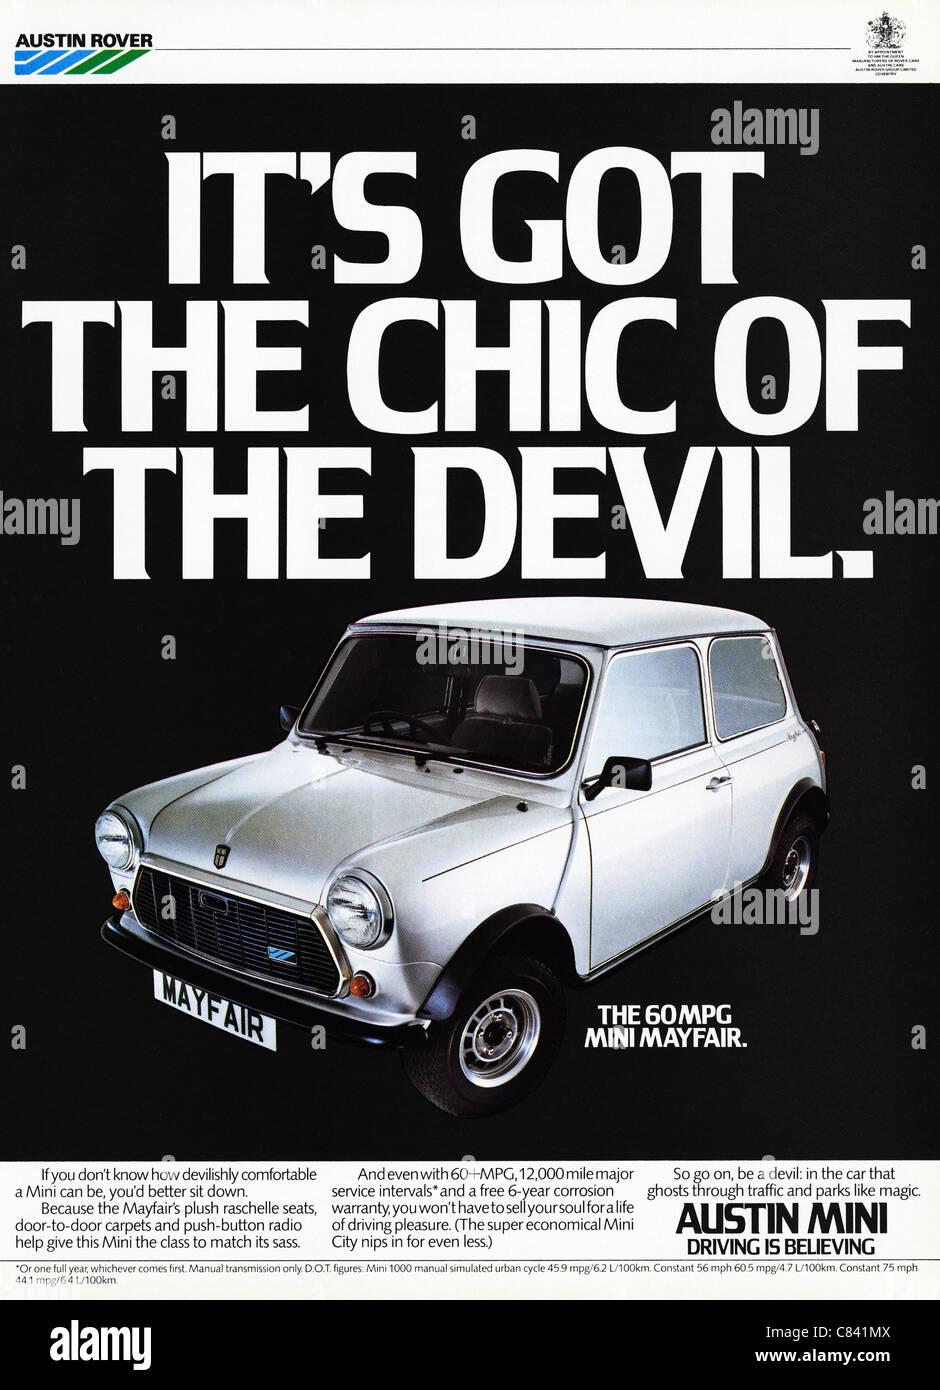 Pagina piena annuncio rivista circa 1984 pubblicità Austin Rover Mini auto Foto Stock